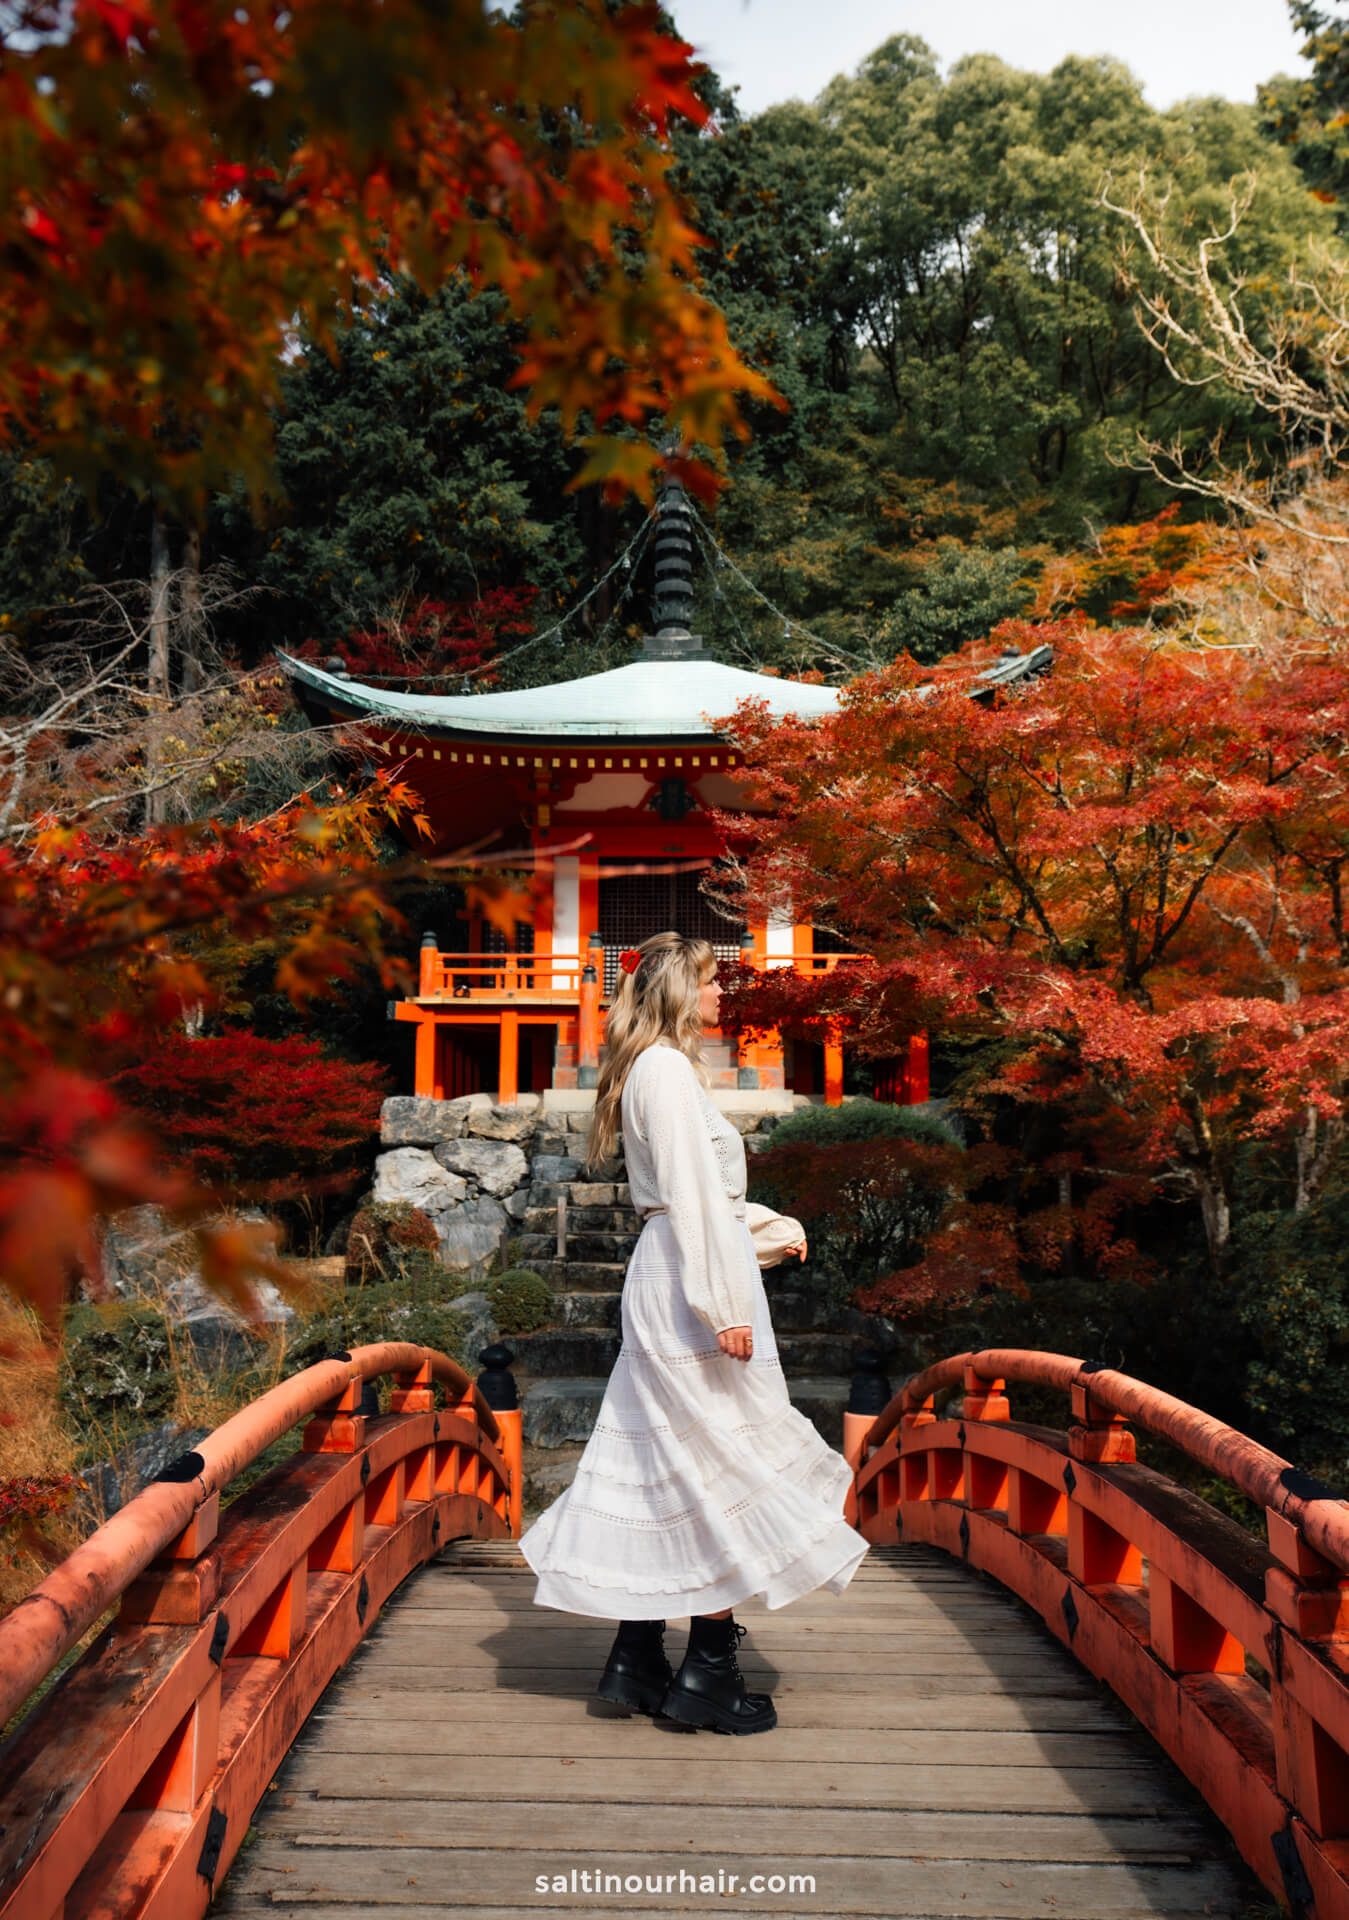 diago-ji temple kyoto japan in fall colors